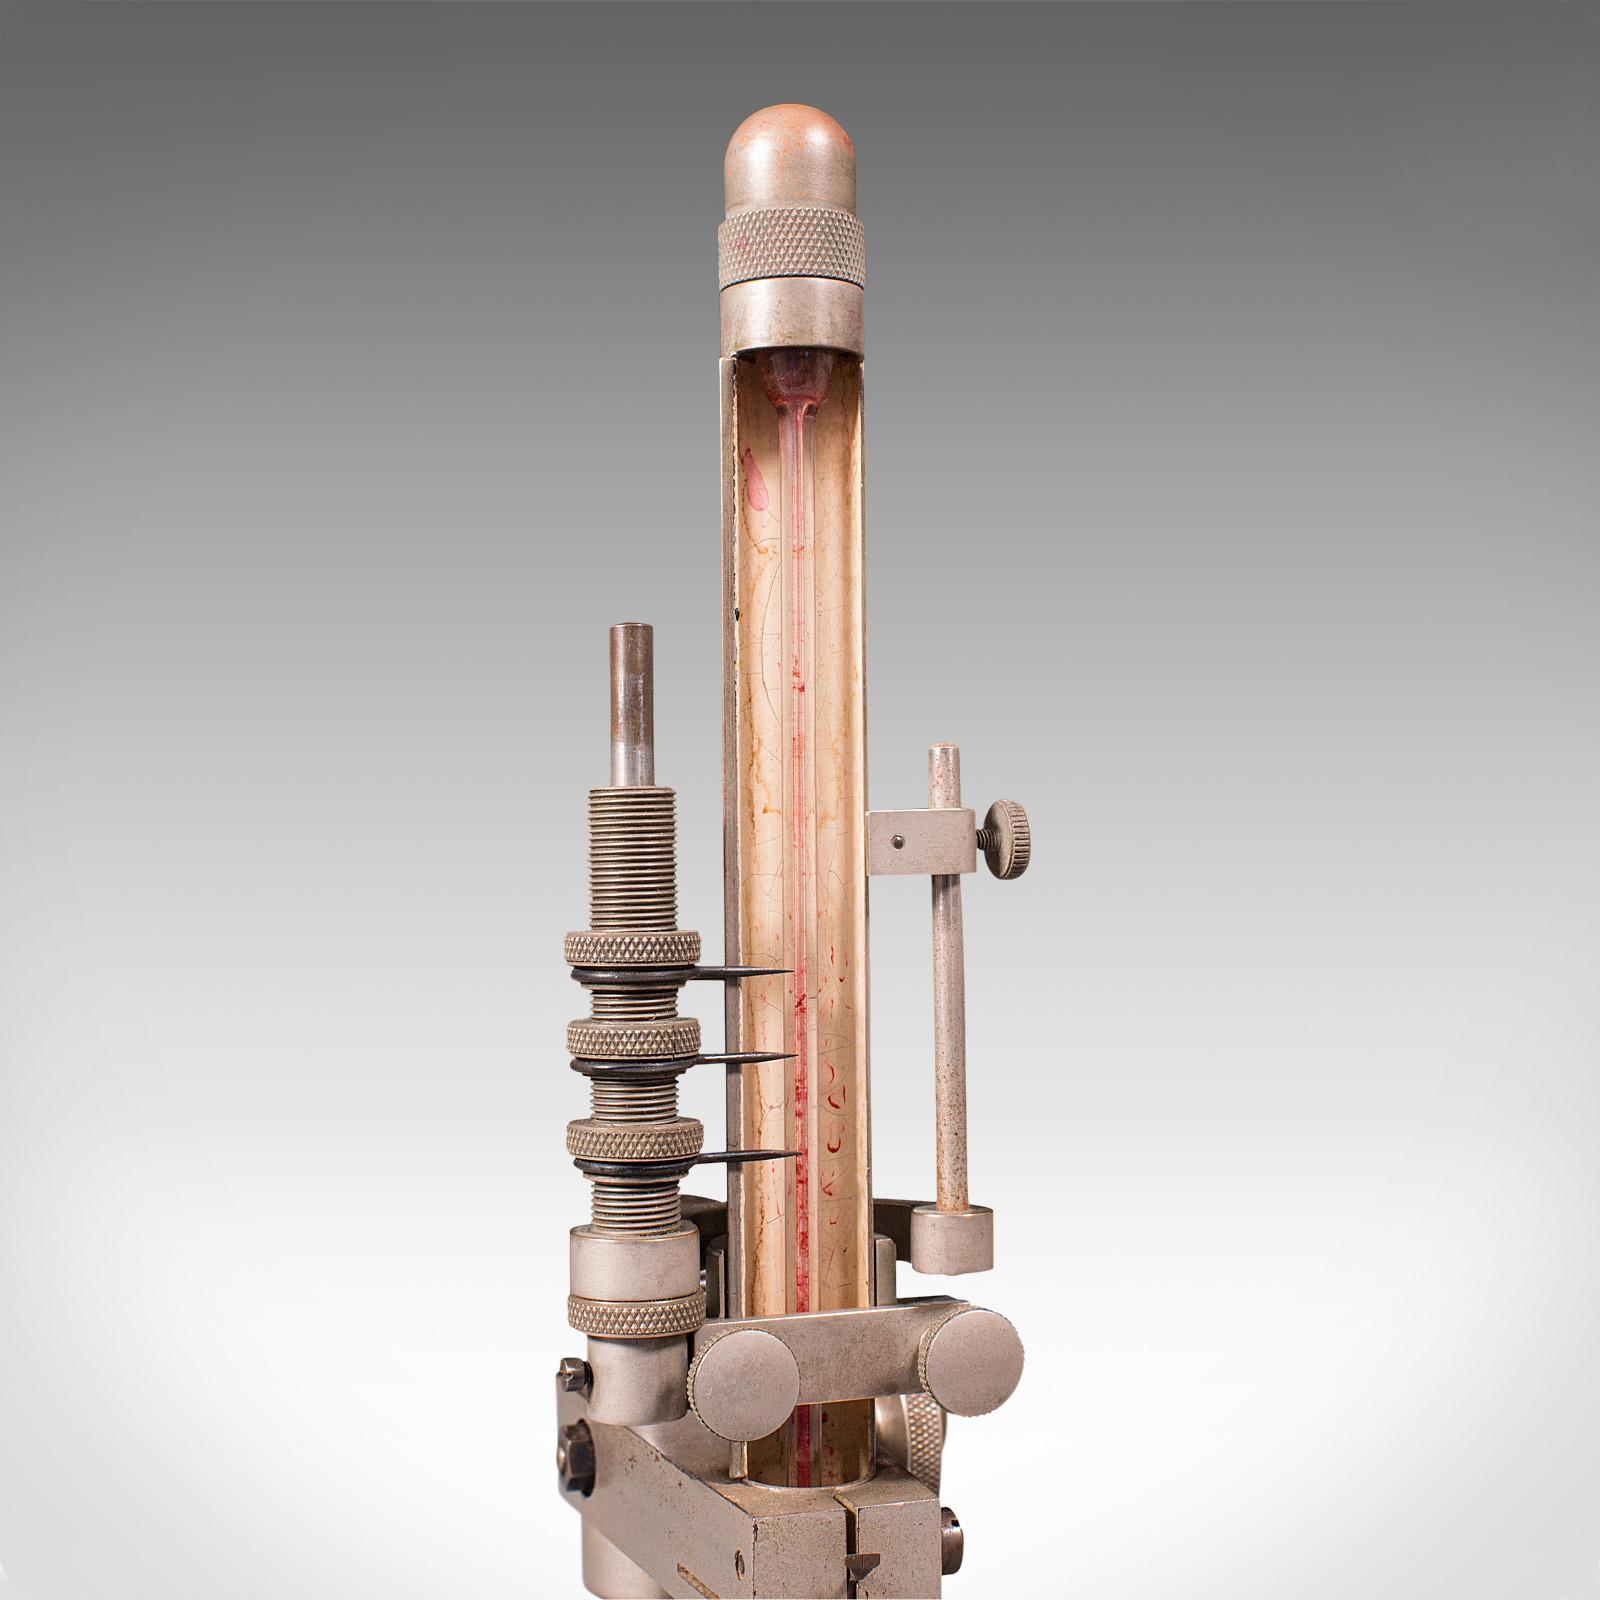 Glass Antique Prestwich Fluid Gauge, English, Aeronautical, Scientific Instrument For Sale